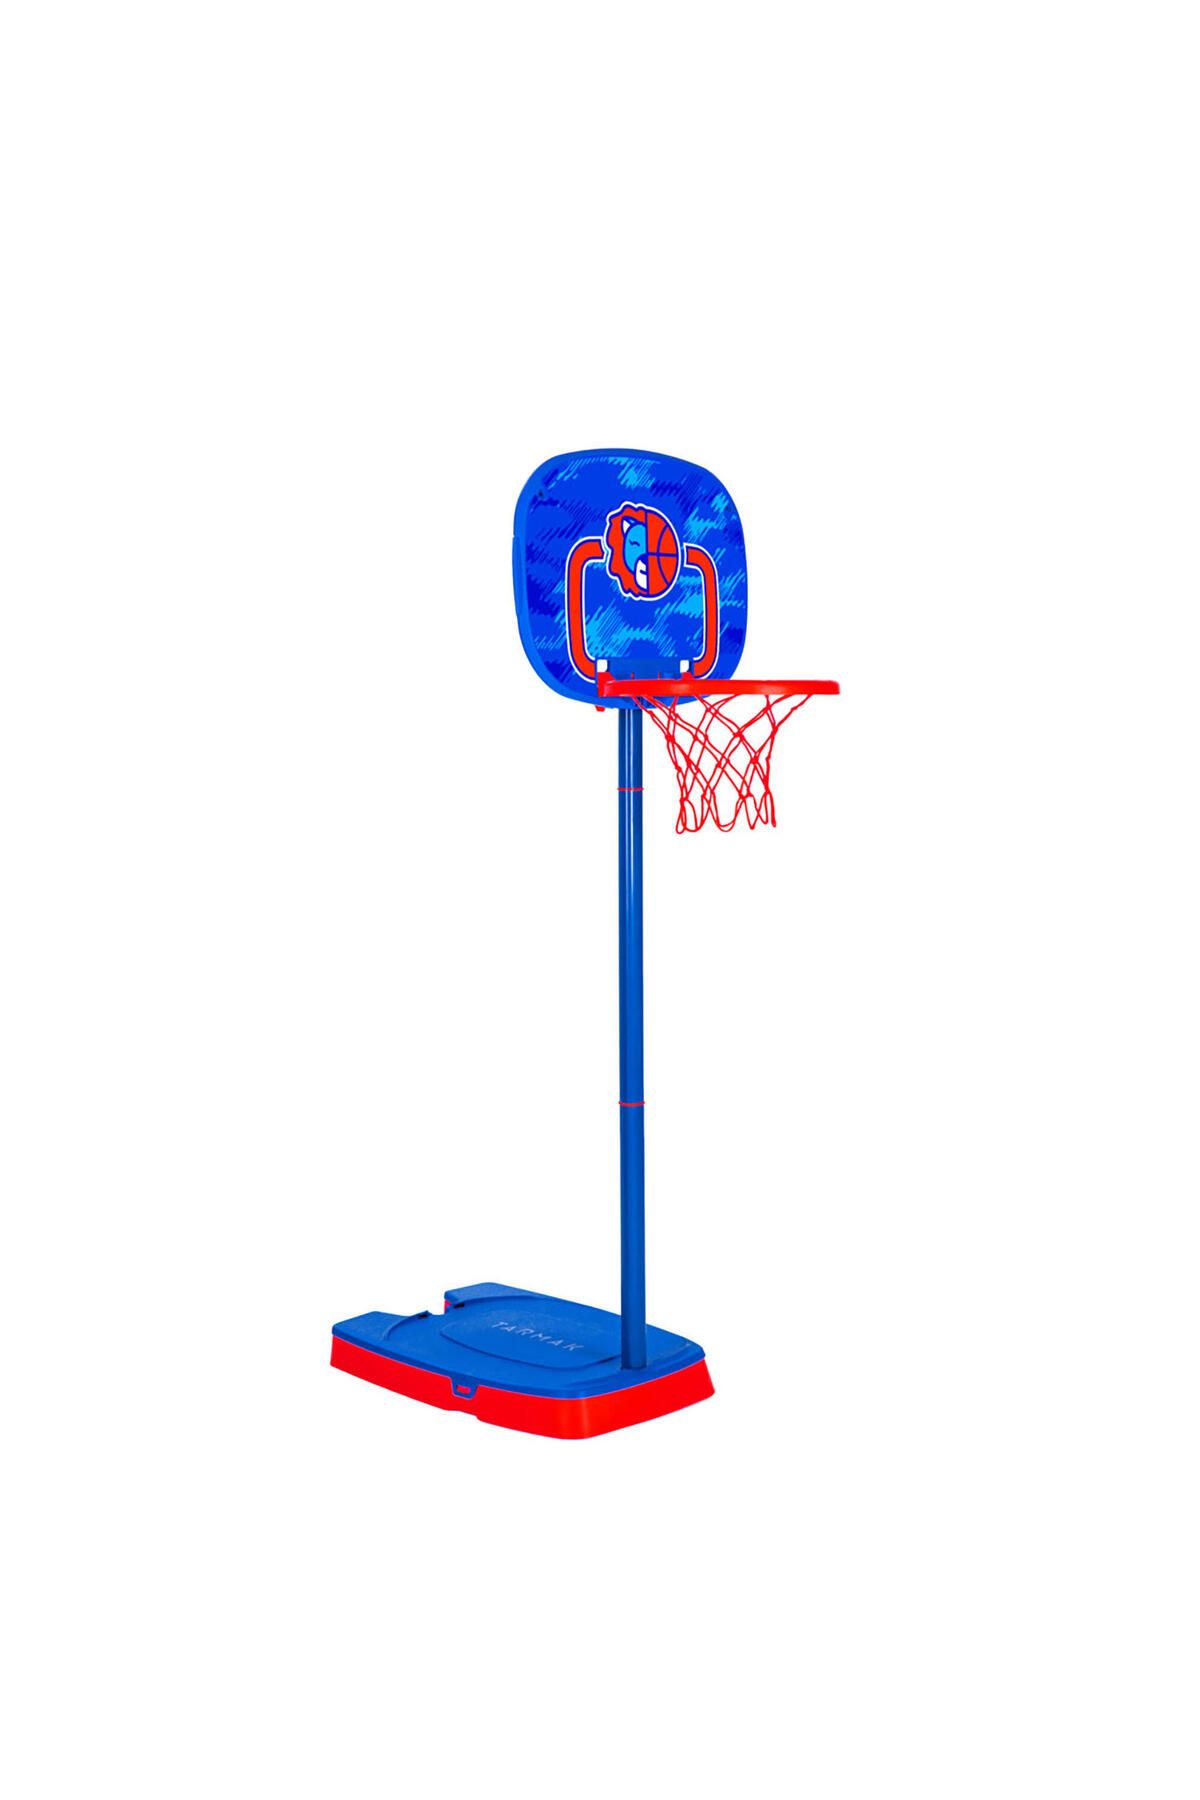 Decathlon Çocuk Basketbol Potası - Turuncu - 0,9m / 1,2m - TS5005 yaşa kadar.